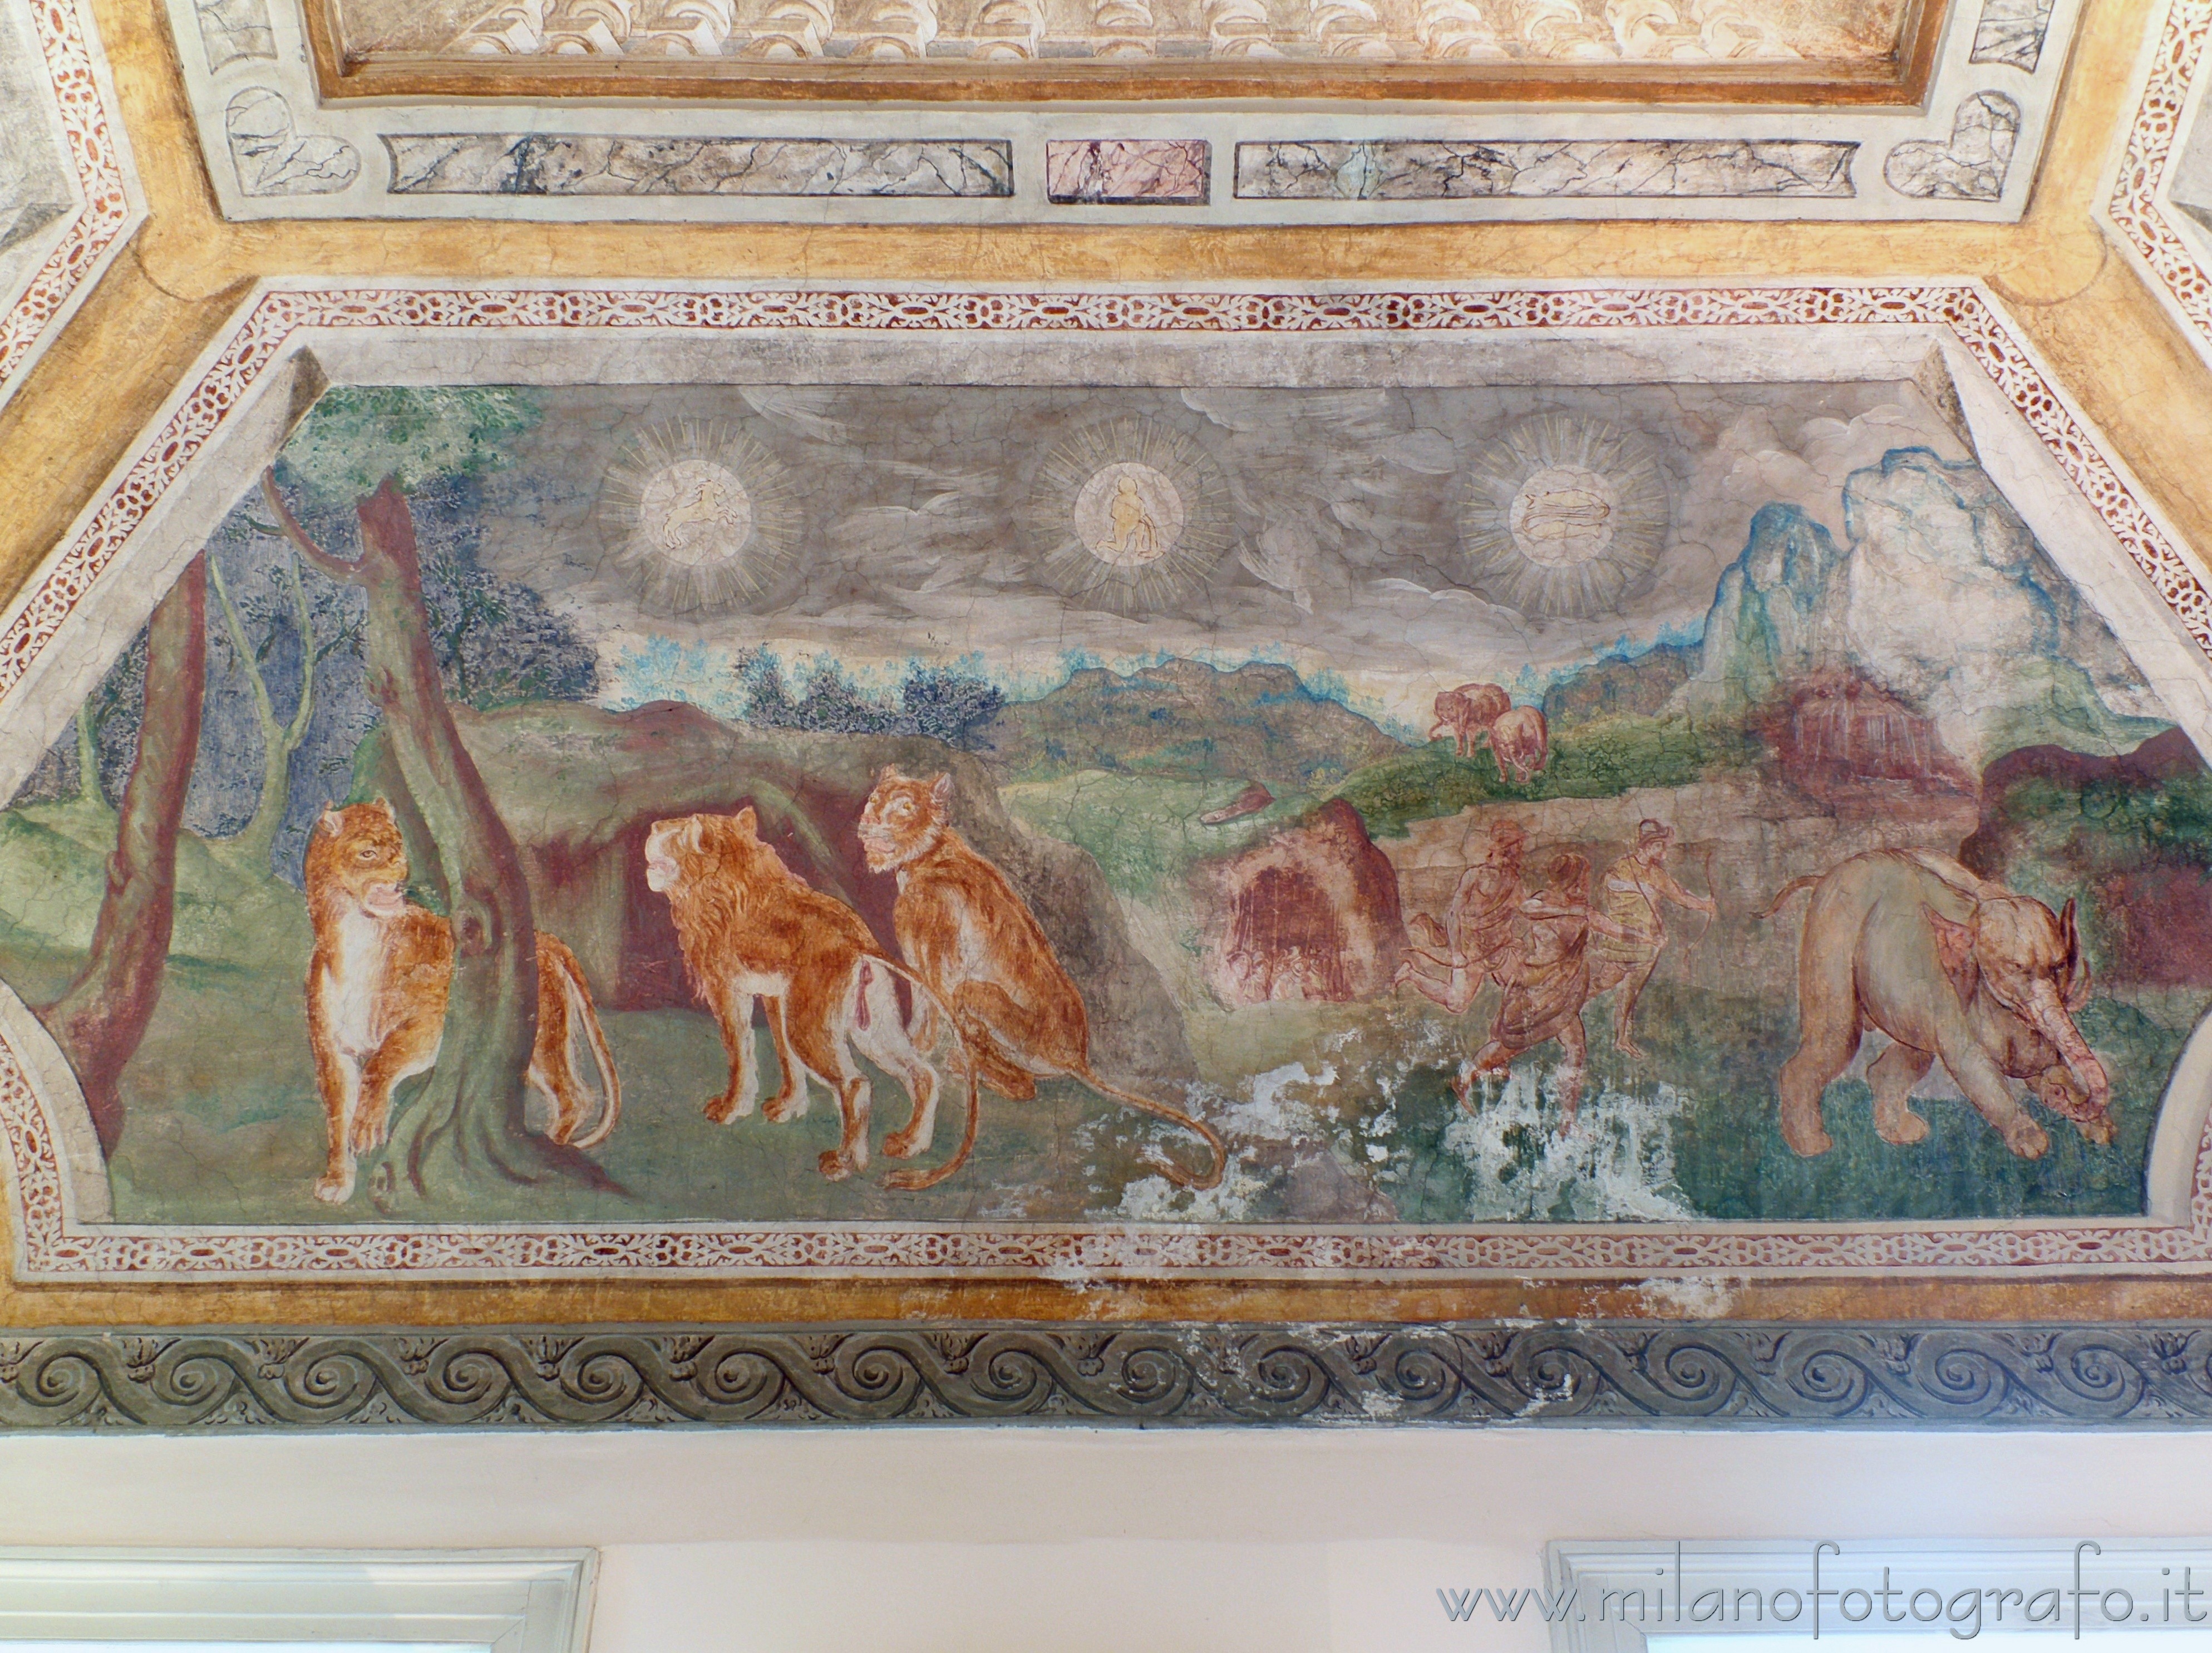 Cavenago di Brianza (Monza e Brianza, Italy): Detail of the frescoes in the Zodiac Hall in Palace Rasini - Cavenago di Brianza (Monza e Brianza, Italy)